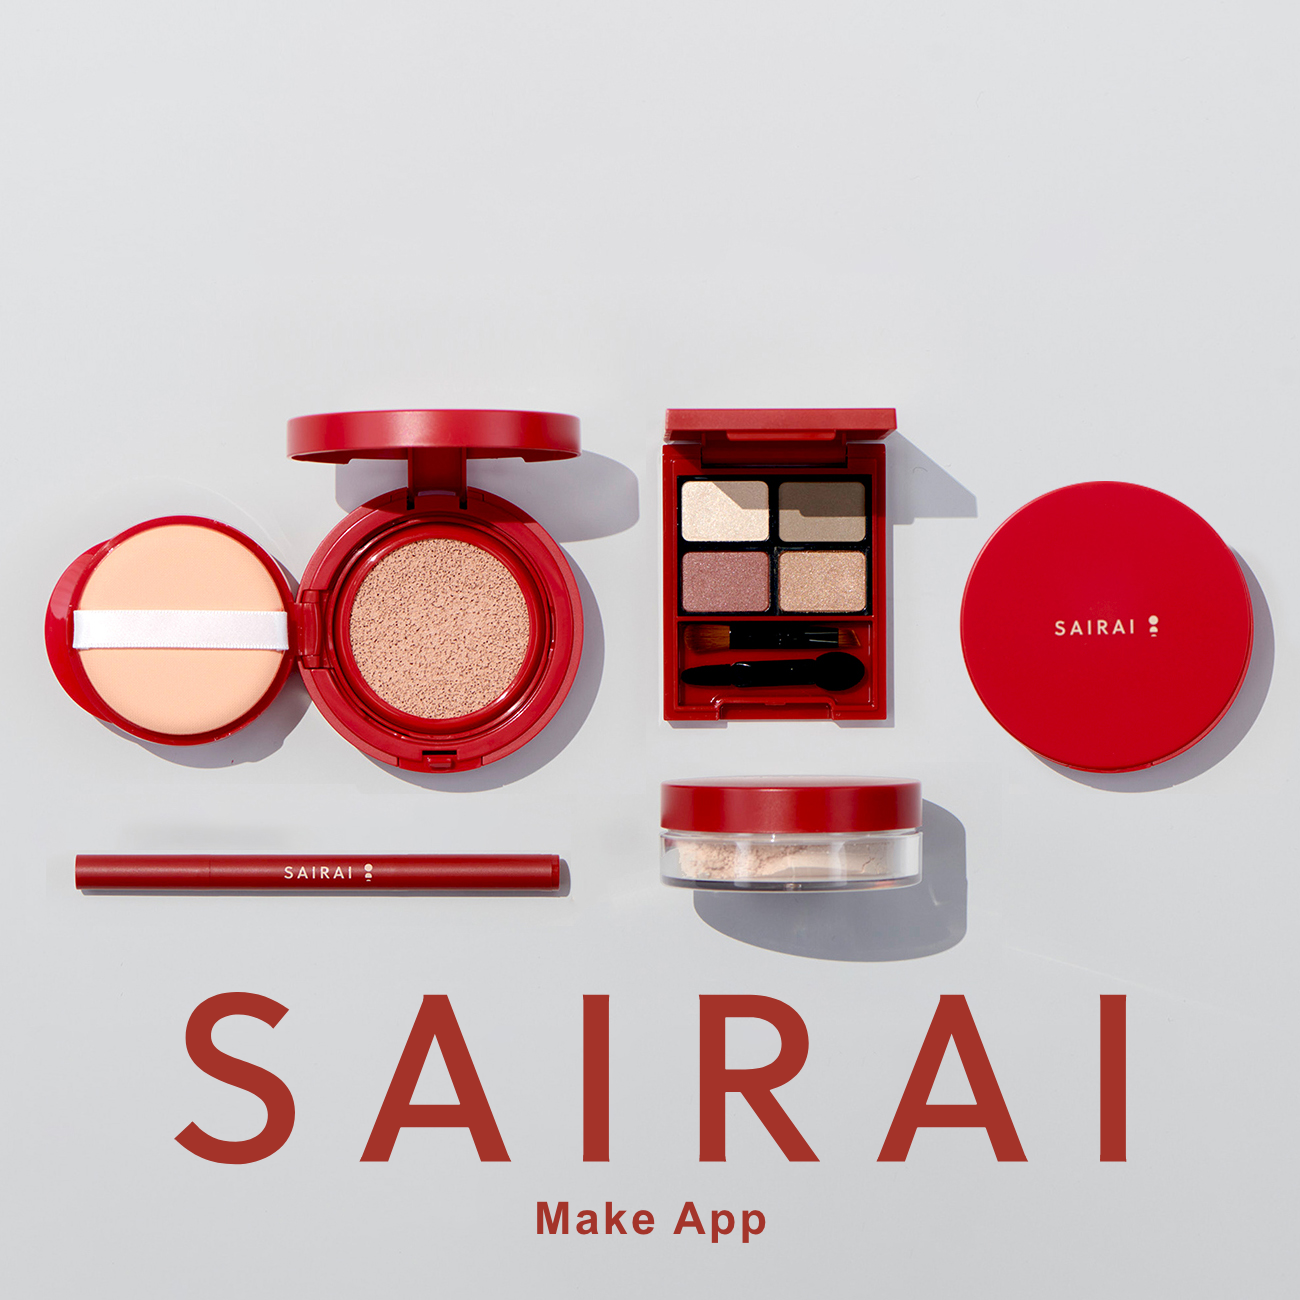 SAIRAIのメイクがバーチャル体験できるアプリを公開いたしました。